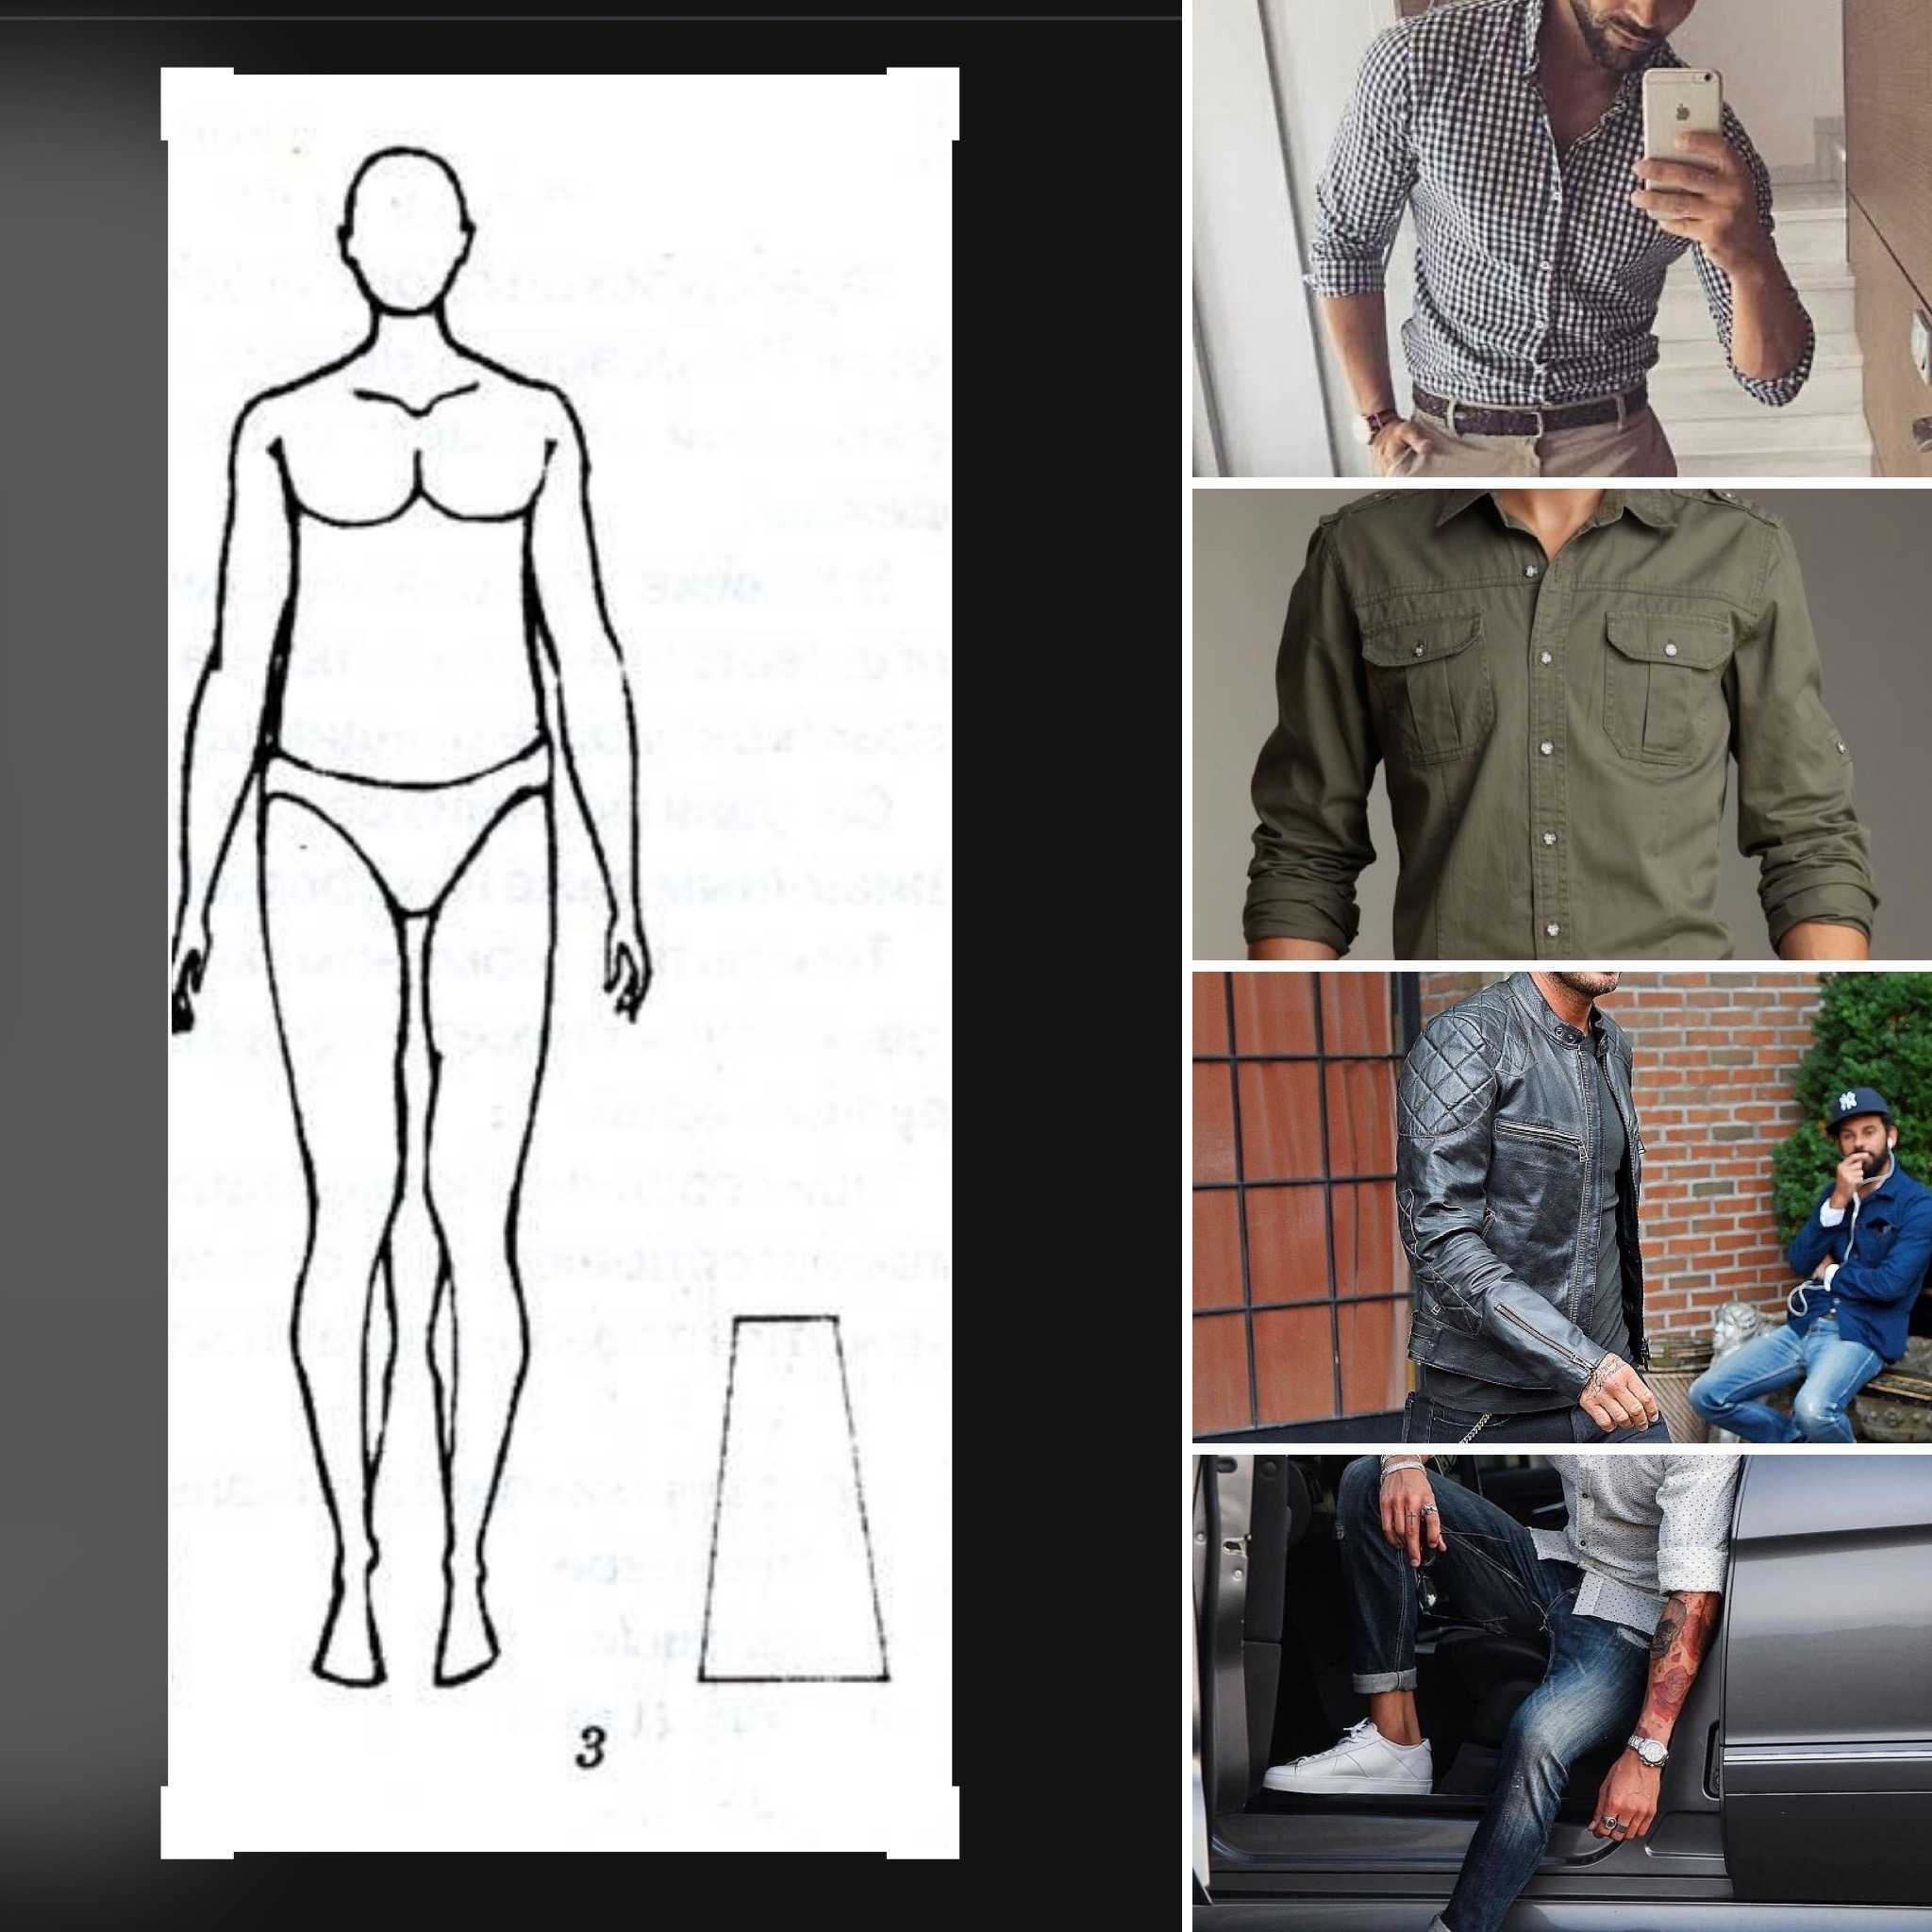 Как выбрать одежду мужчине по его телосложению - 3 правила